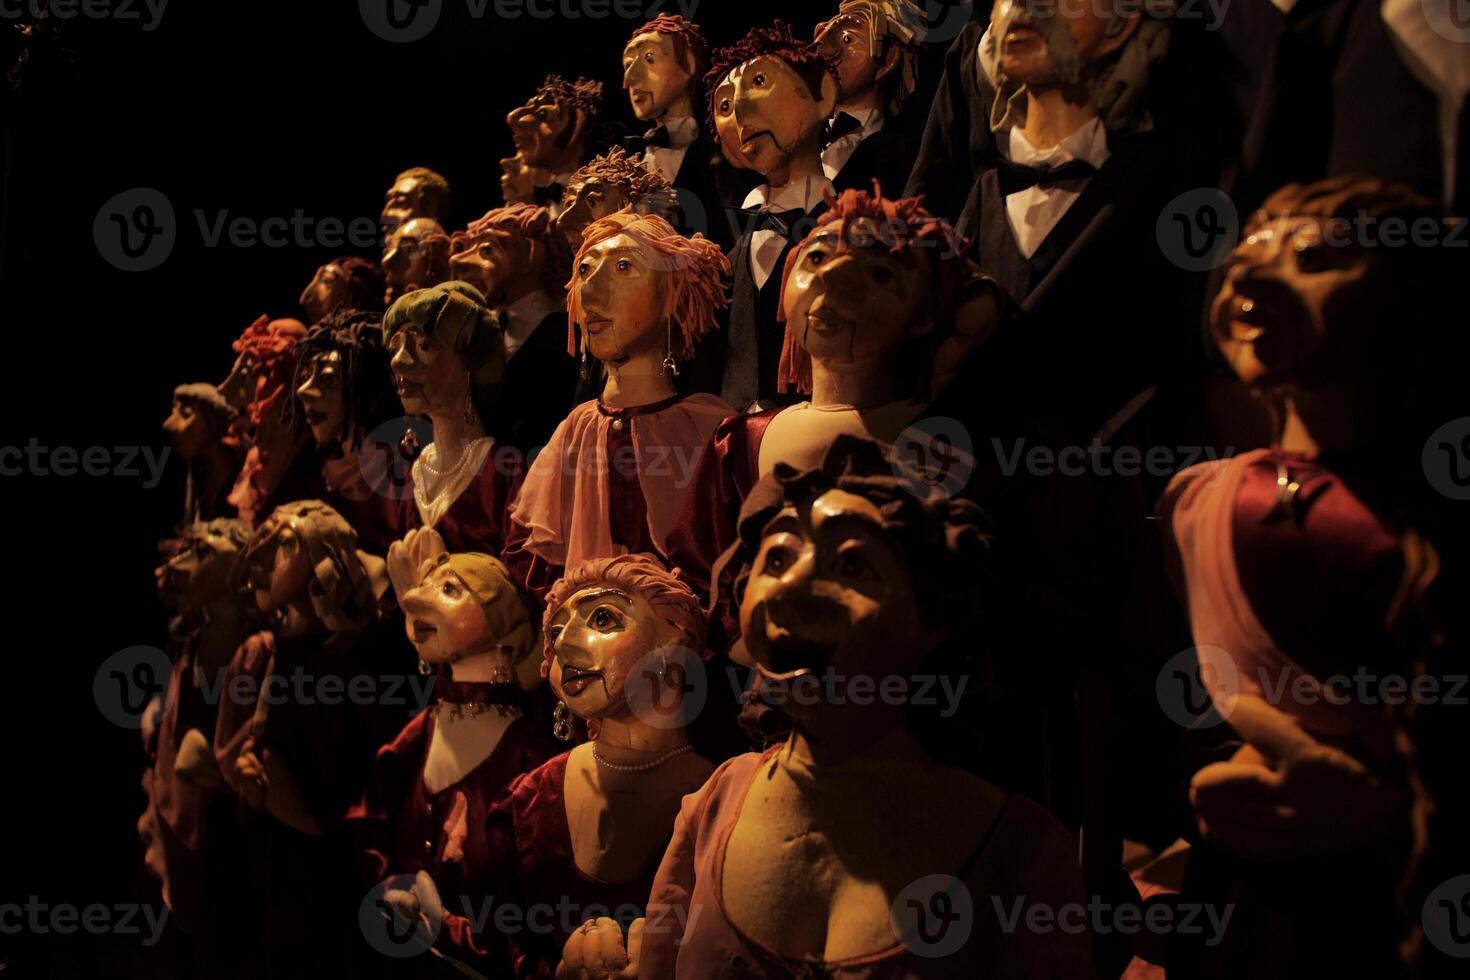 massor av teater- dockor i de mörk foto